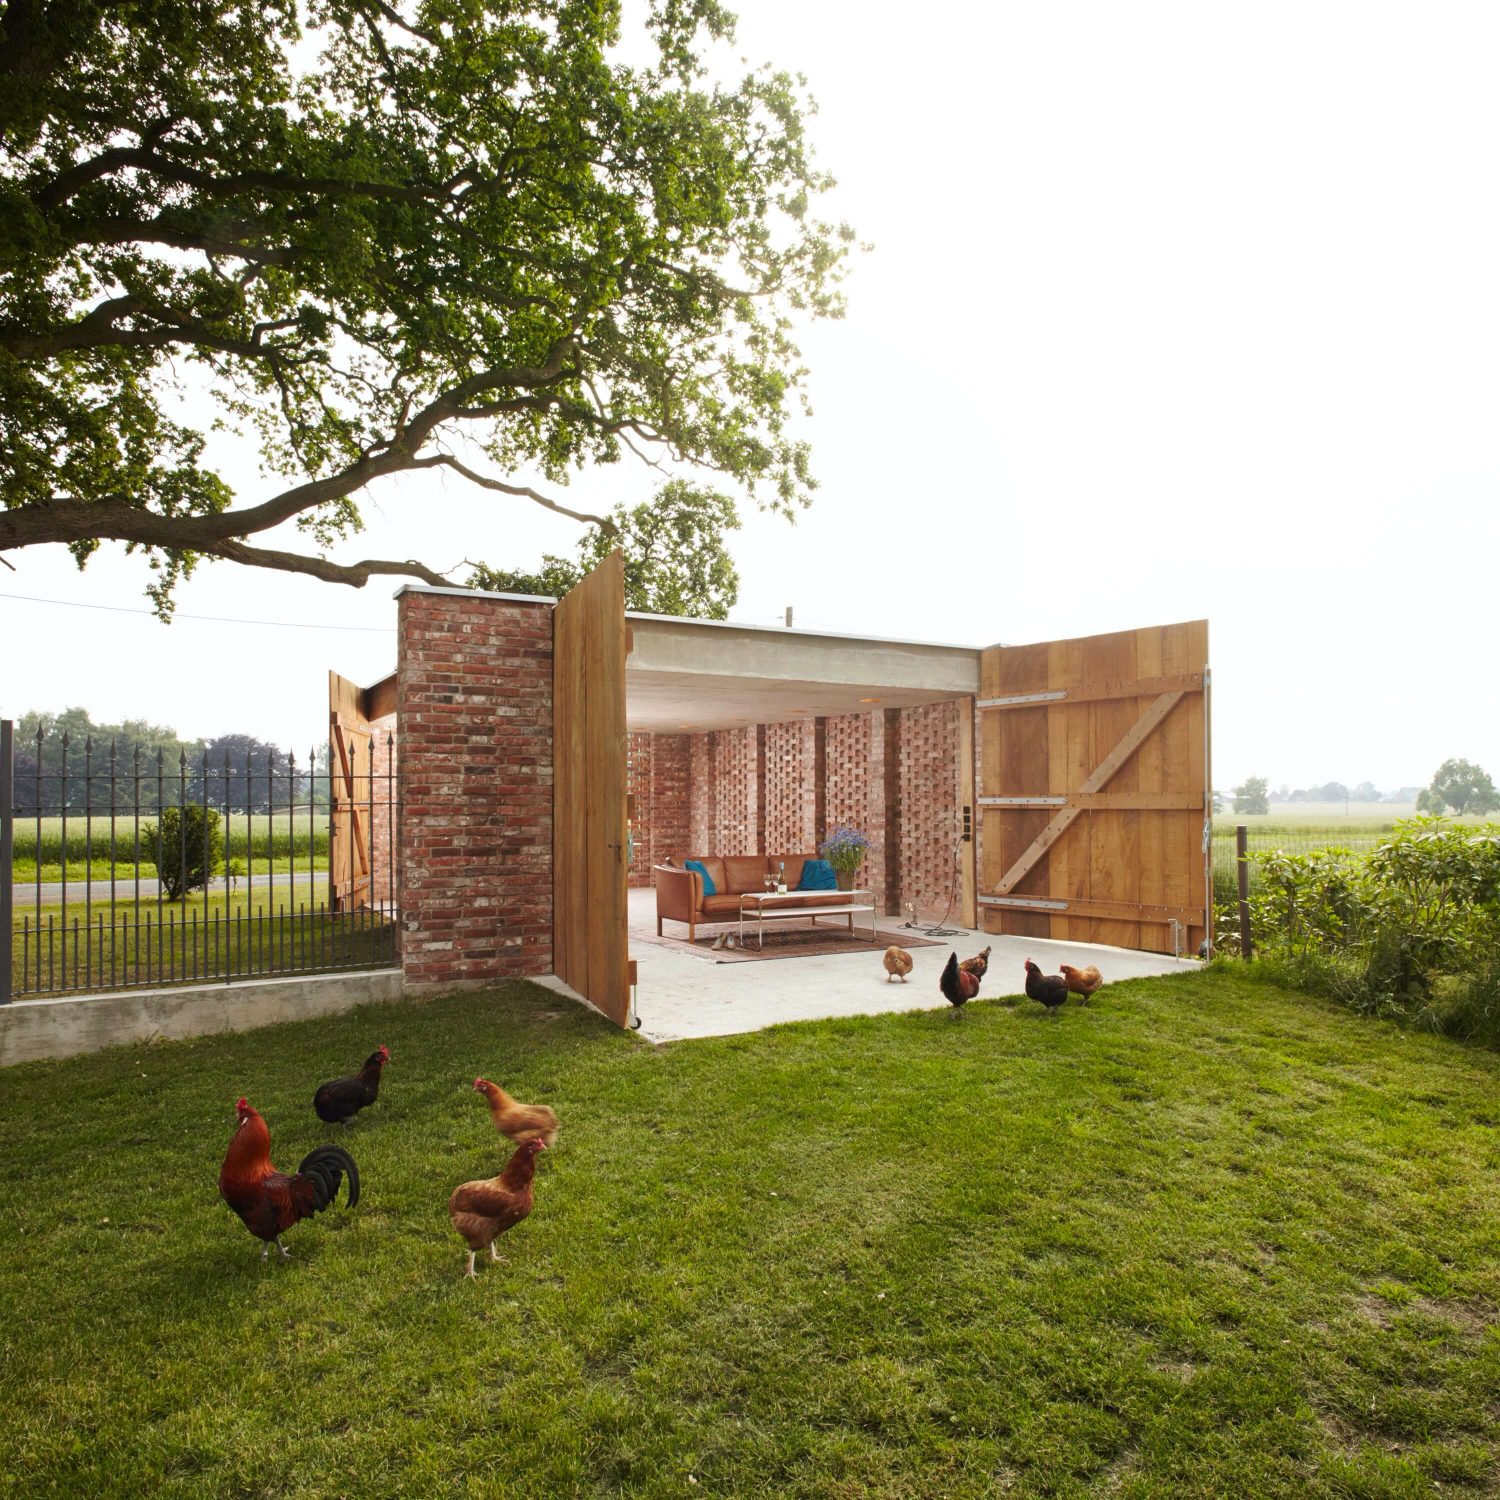 Remise Pavillon by Wirth Architekten